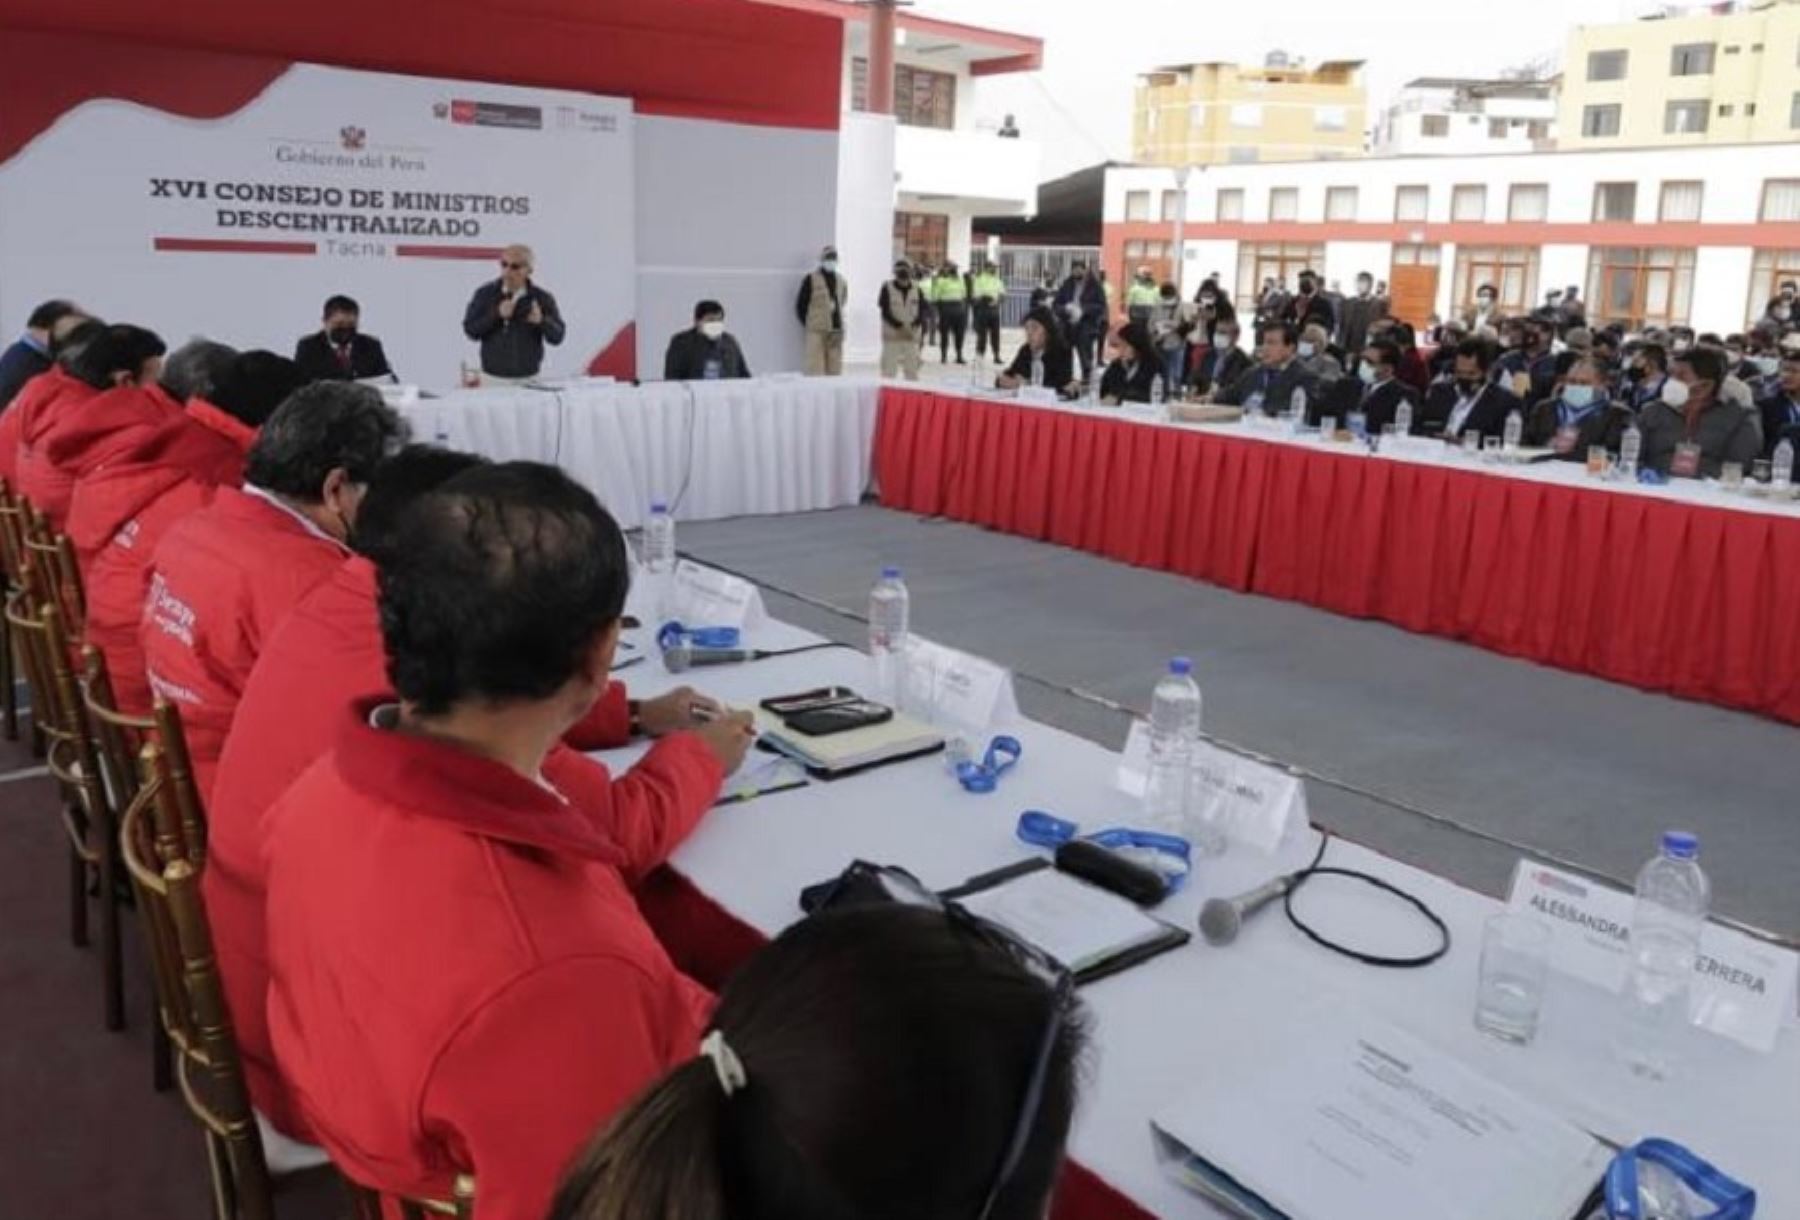 Ejecutivo realiza hoy XVII Consejo de Ministros Descentralizado en Arequipa